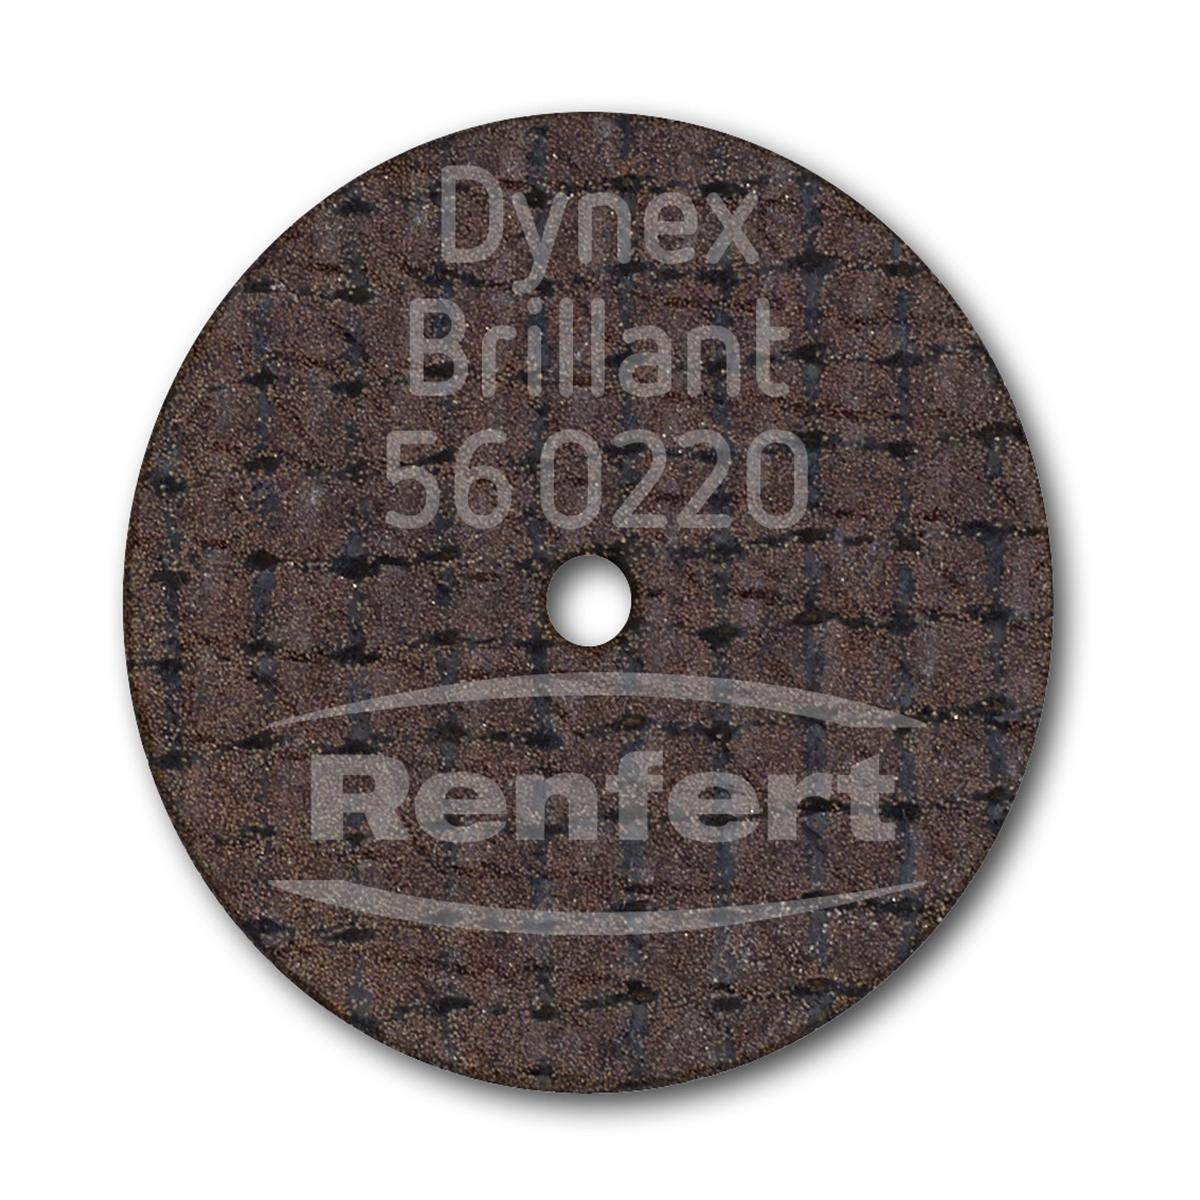 Dynex Brillant Trennscheibe - Ø 20 mm, Stärke 0,2 mm, Packung 10 Stück